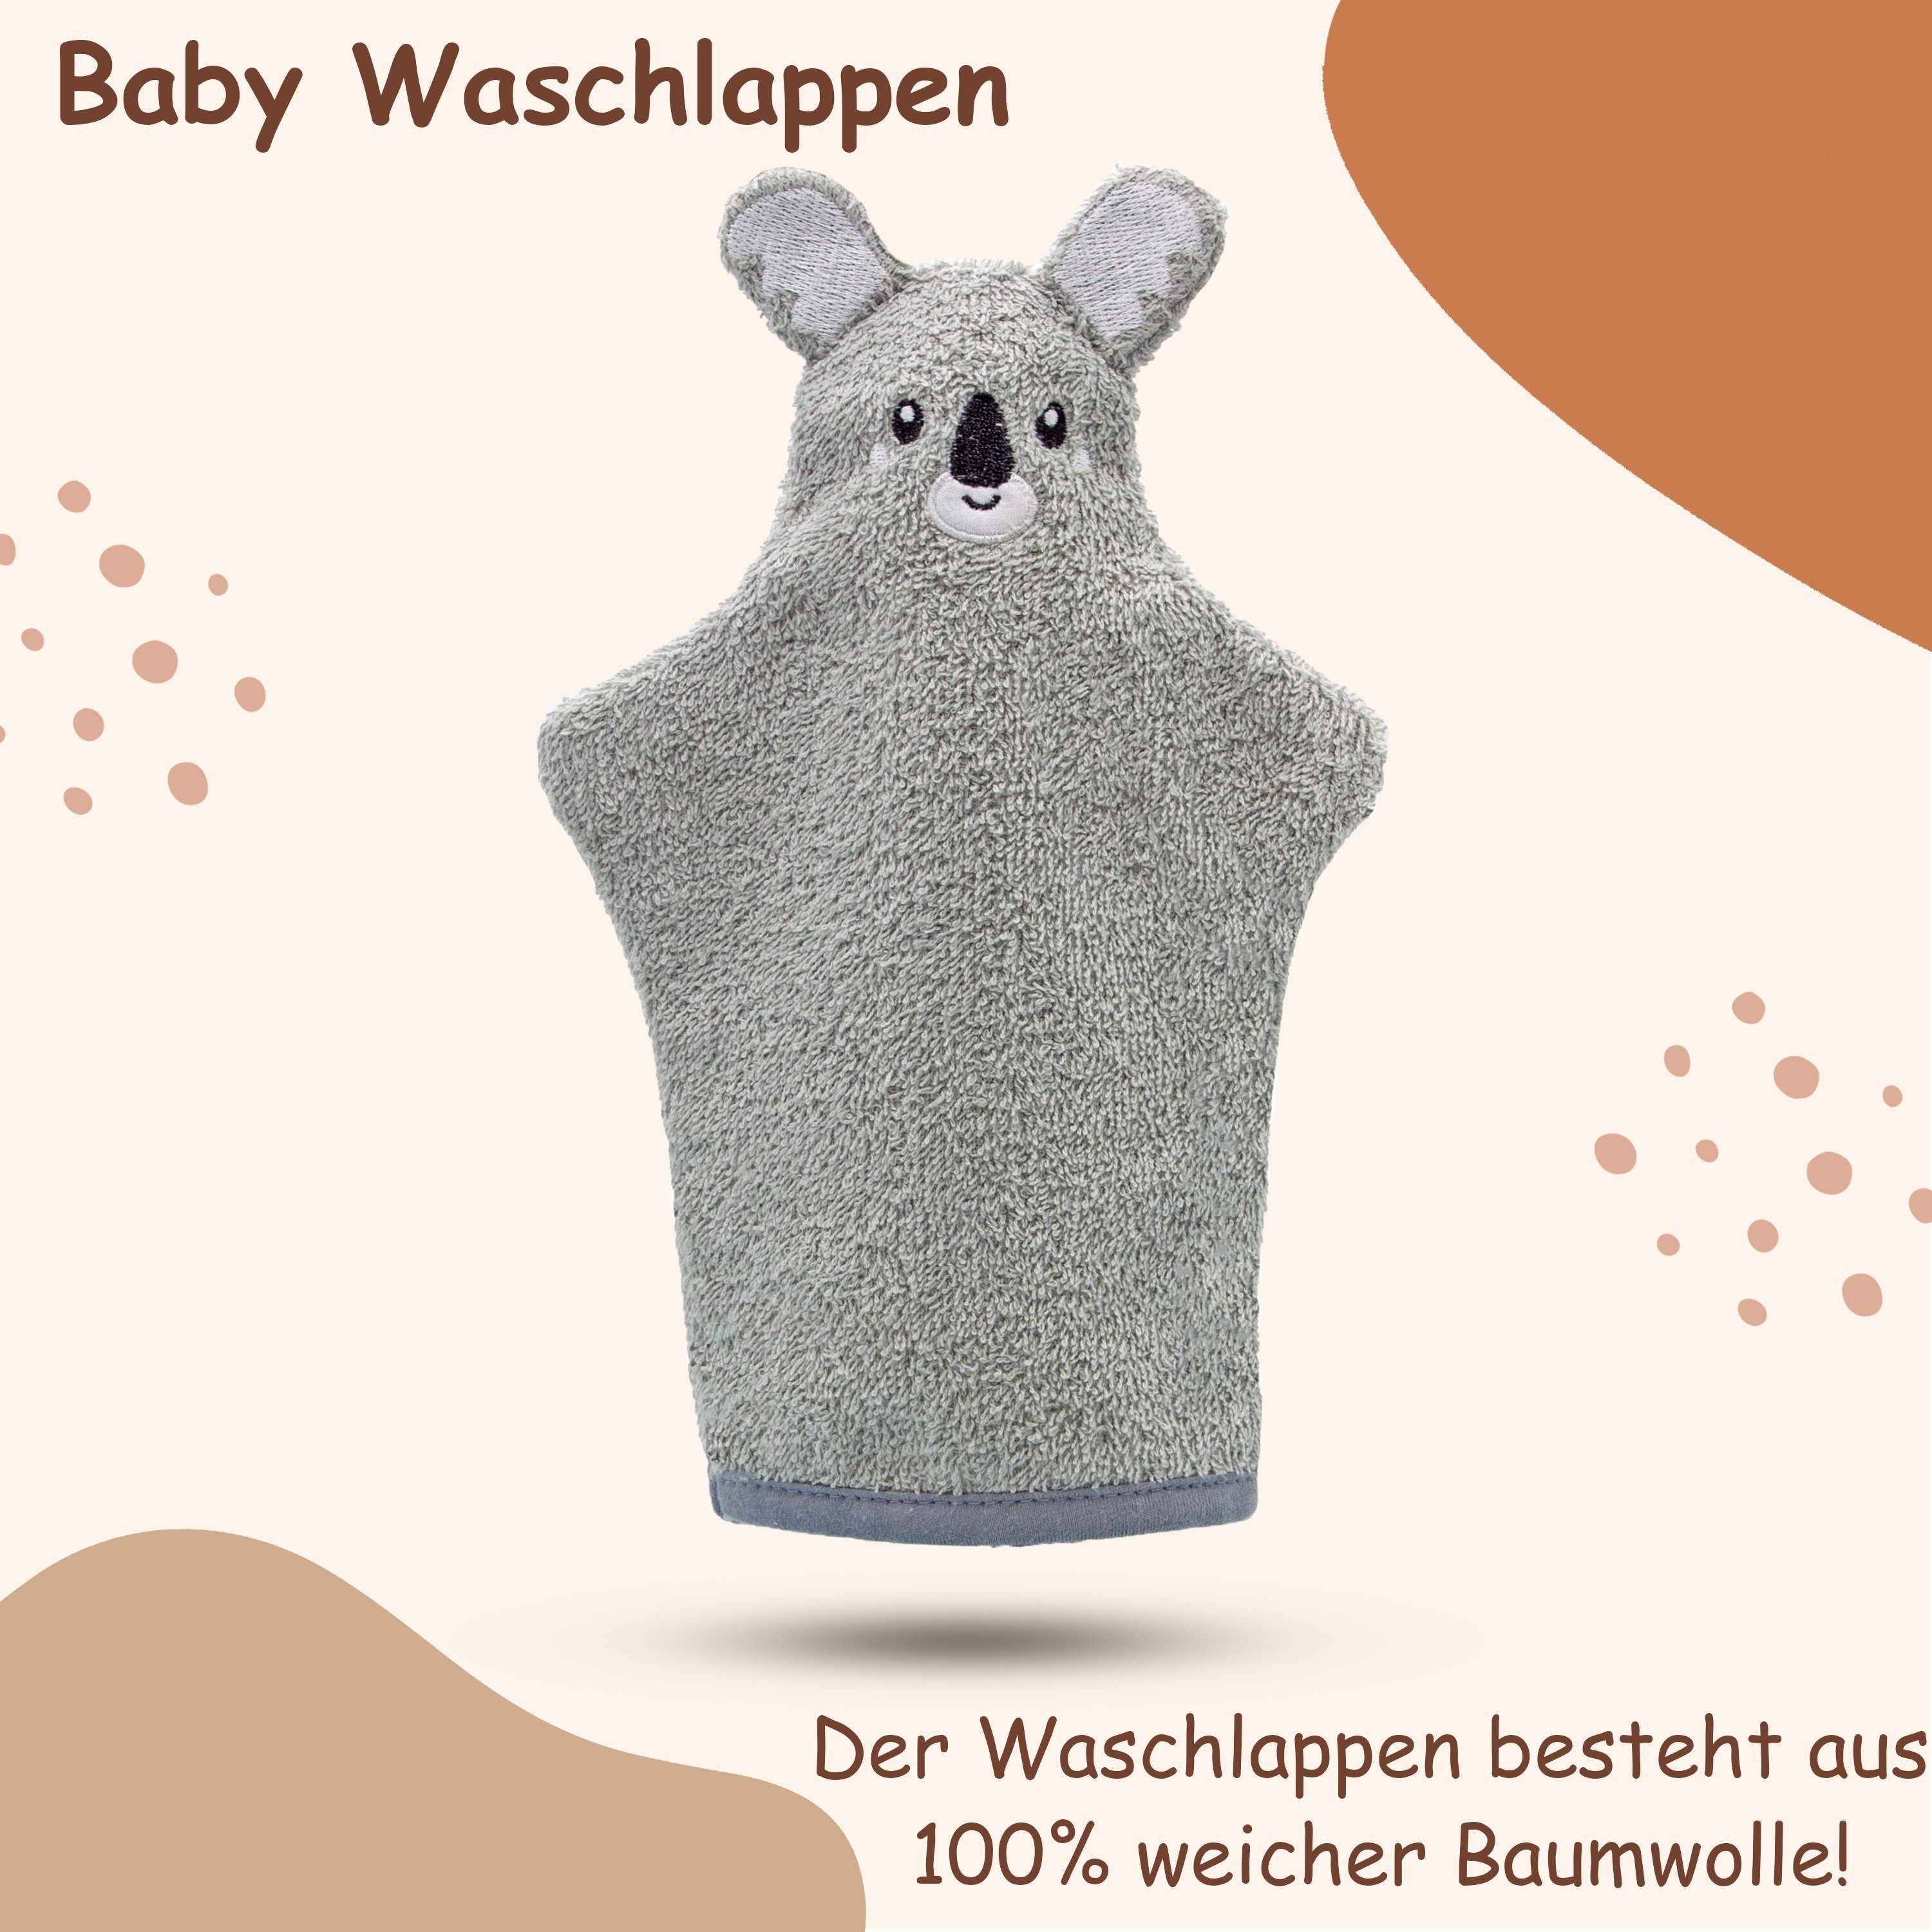 Babykajo + Karton, + Baby Koala 3-tlg) Waschlappen Kapuzenhandtuch Neugeborenen-Geschenkset (mit Babydecke